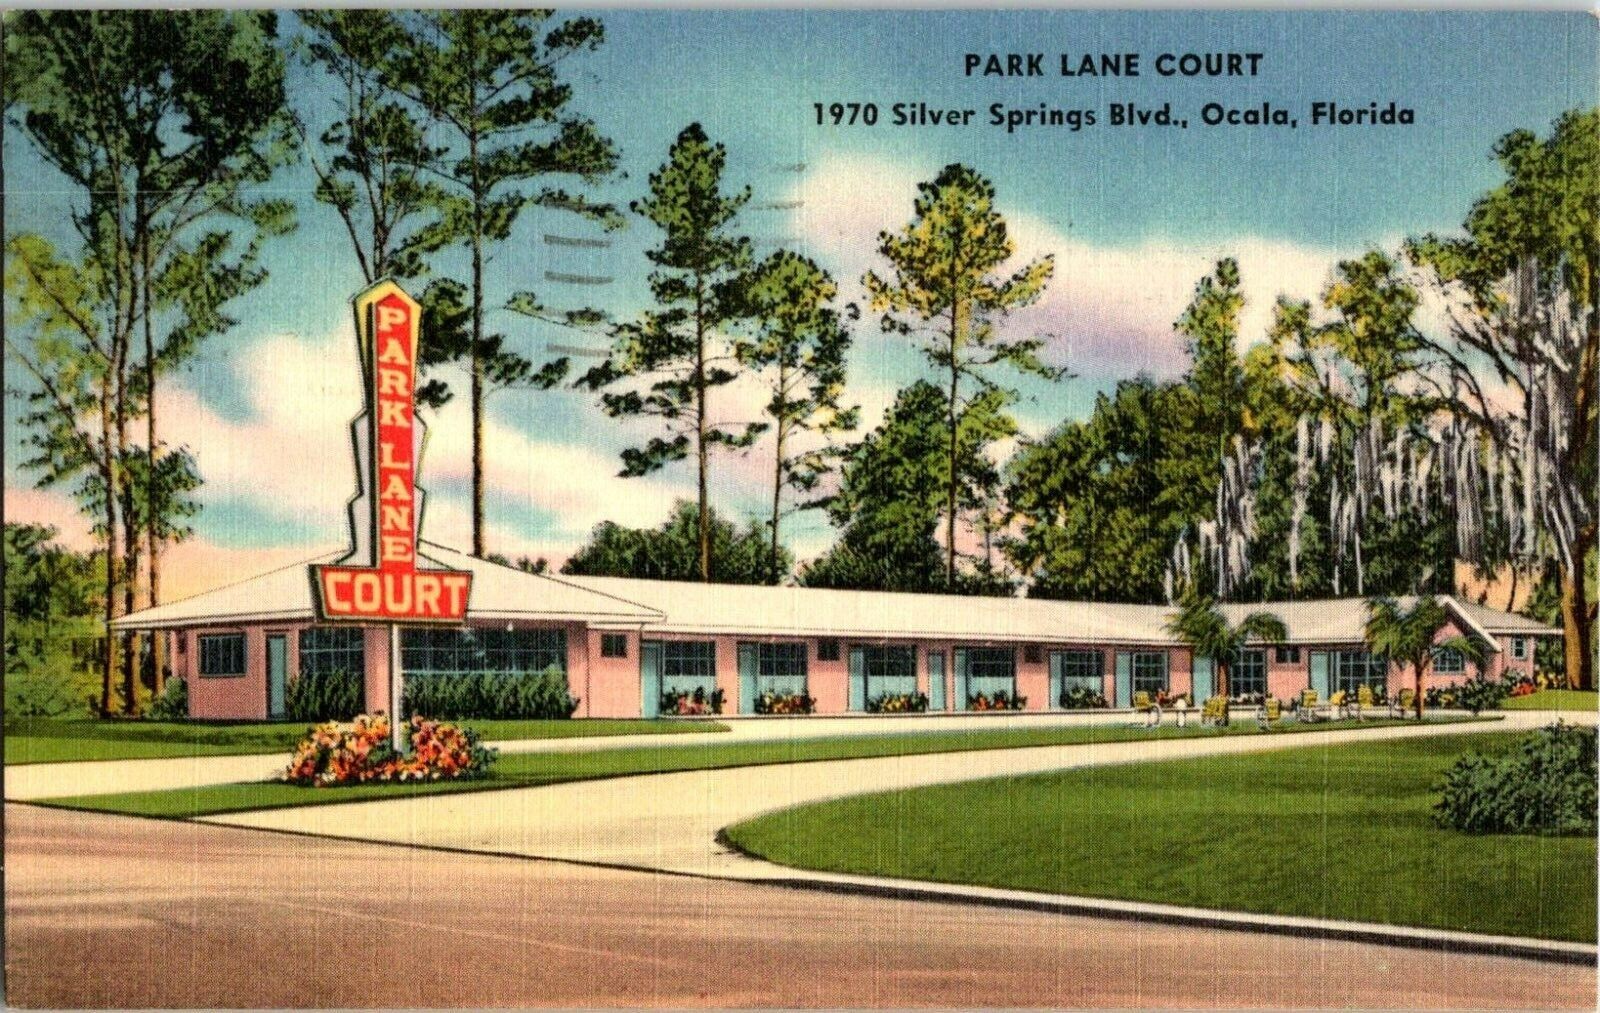 Postcard 1956 Park Lane Court Motel Silver Springs Blvd. Ocala Florida A64